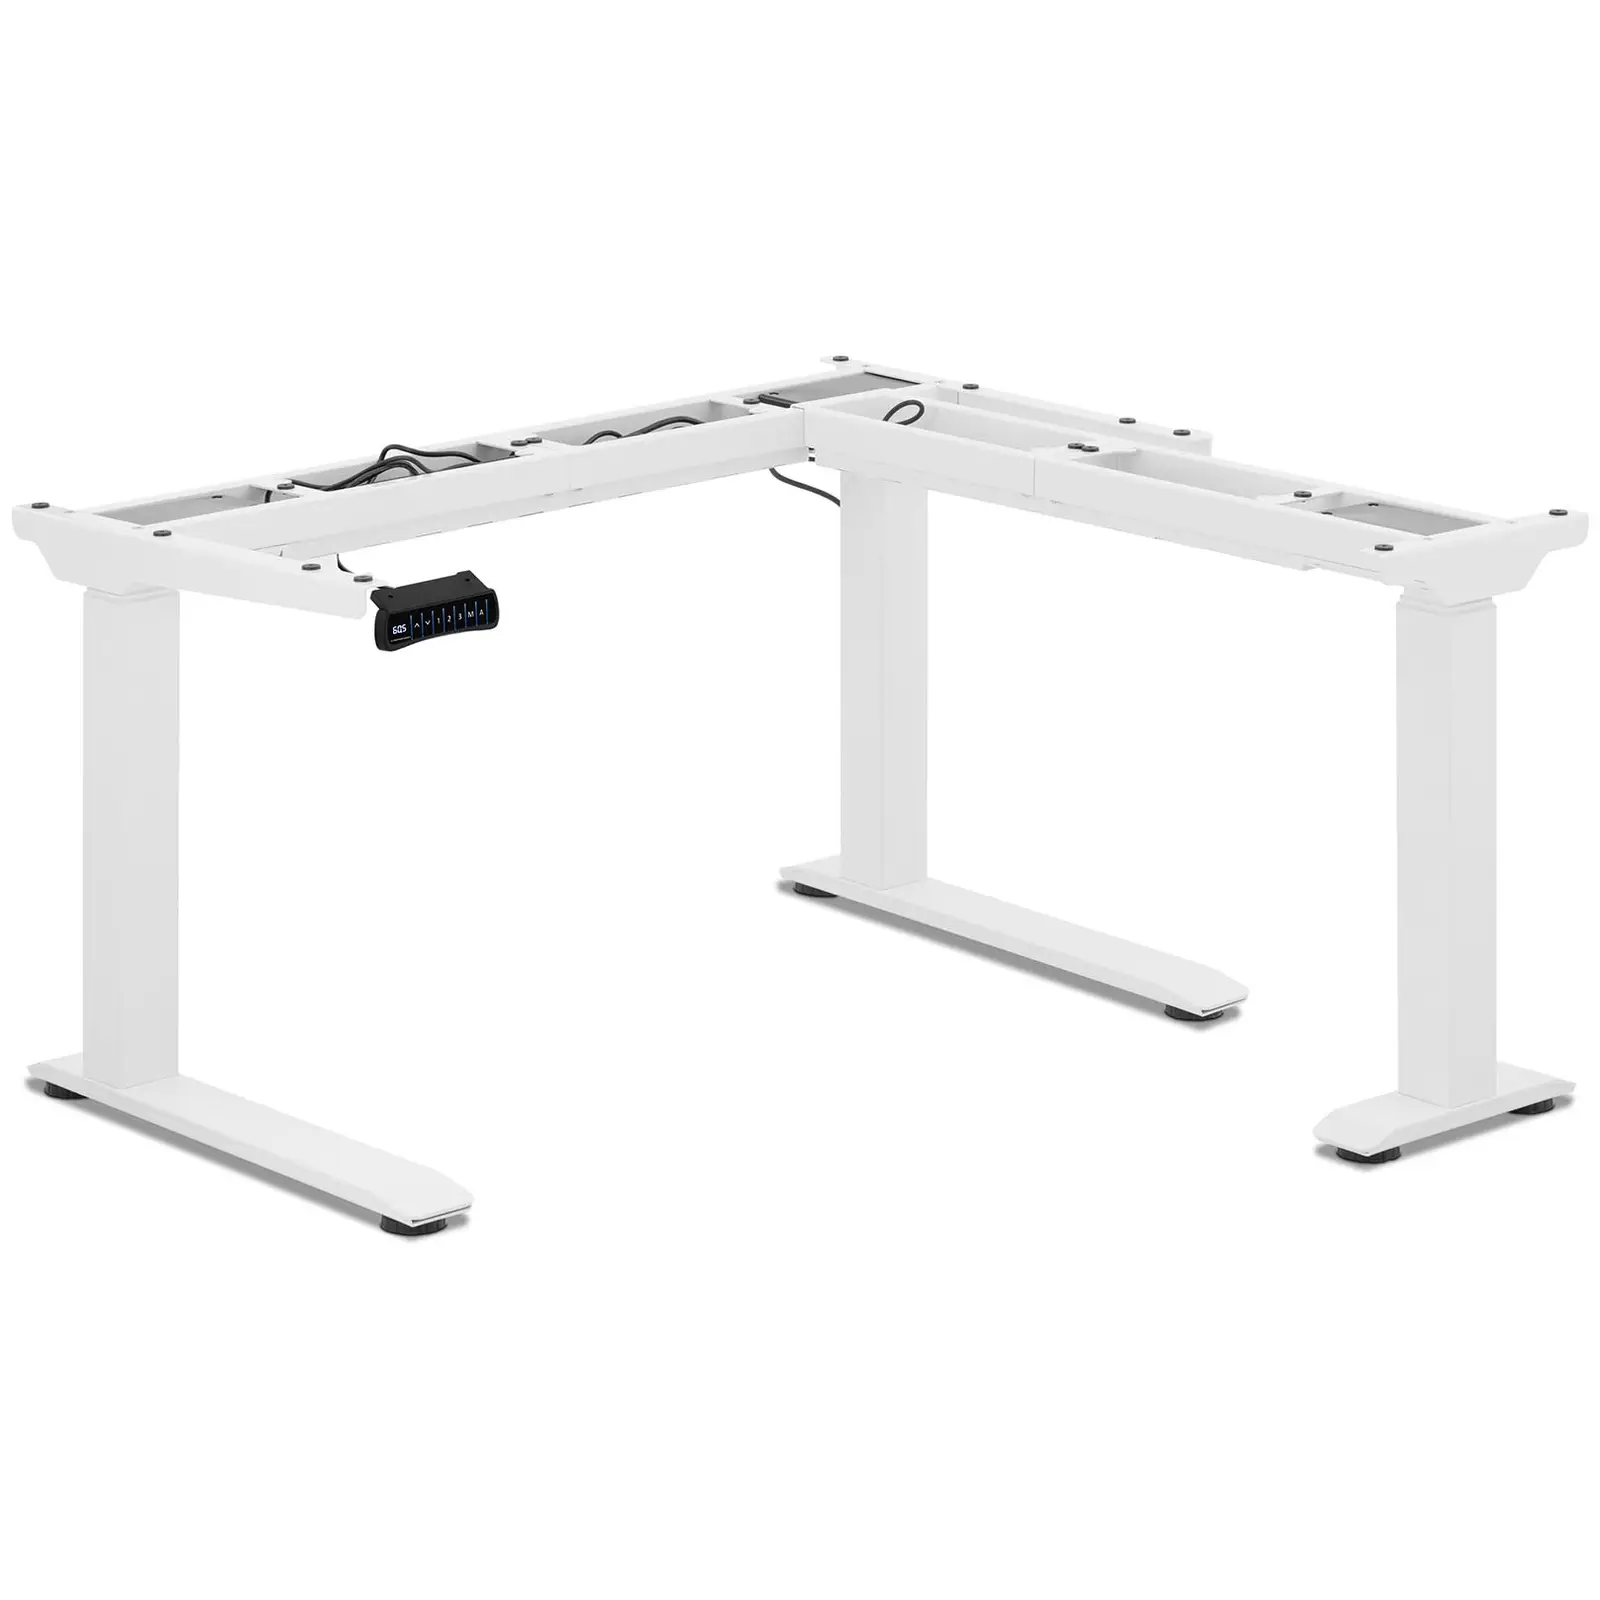 Výškově nastavitelný rohový rám stolu - výška: 60 - 125 cm - šířka: 110 - 190 cm / 90 - 150 cm